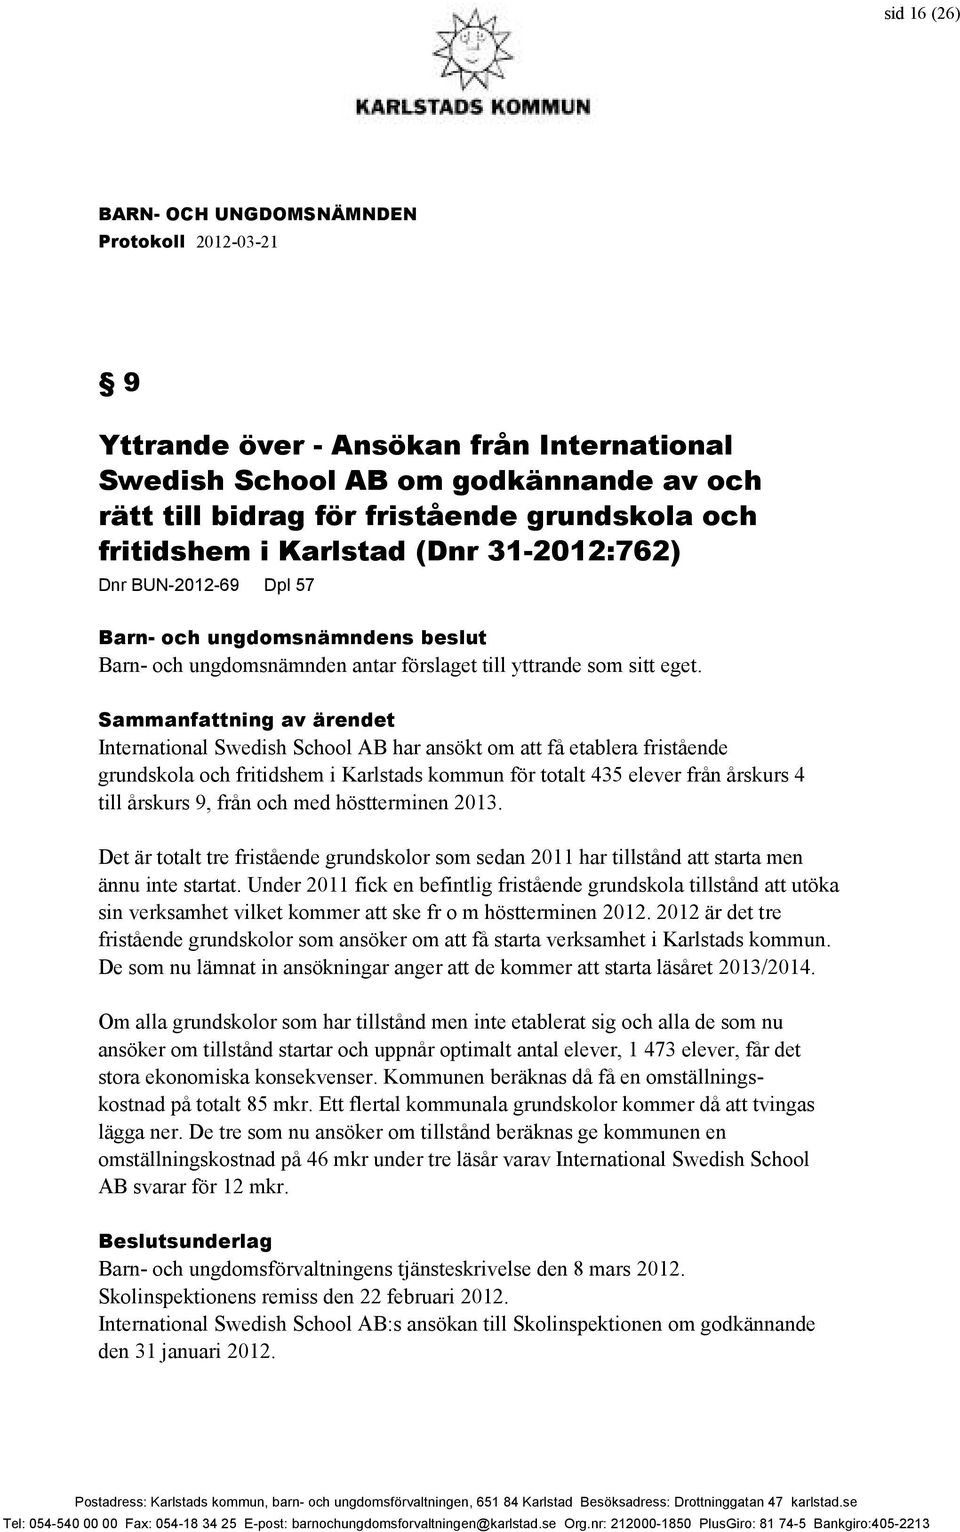 Sammanfattning av ärendet International Swedish School AB har ansökt om att få etablera fristående grundskola och fritidshem i Karlstads kommun för totalt 435 elever från årskurs 4 till årskurs 9,